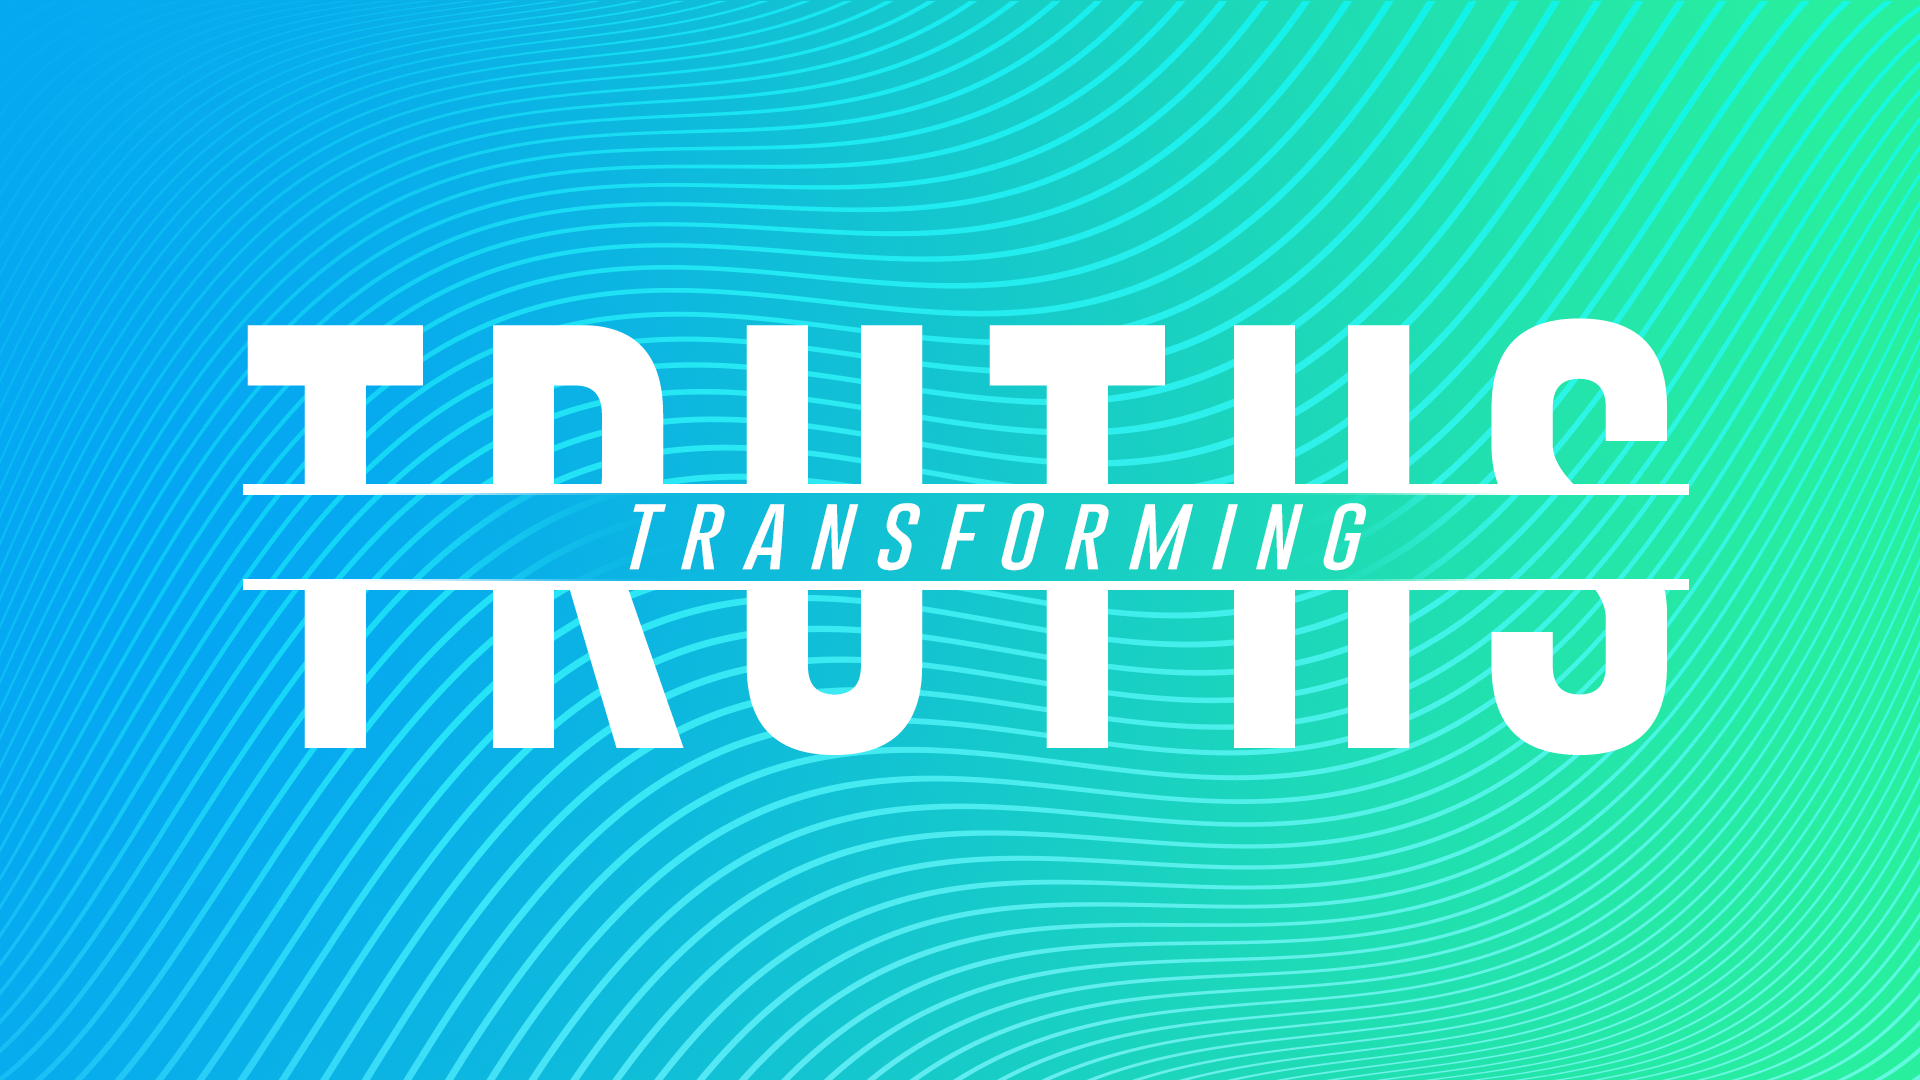 September 6, 2020 – Transforming Truths